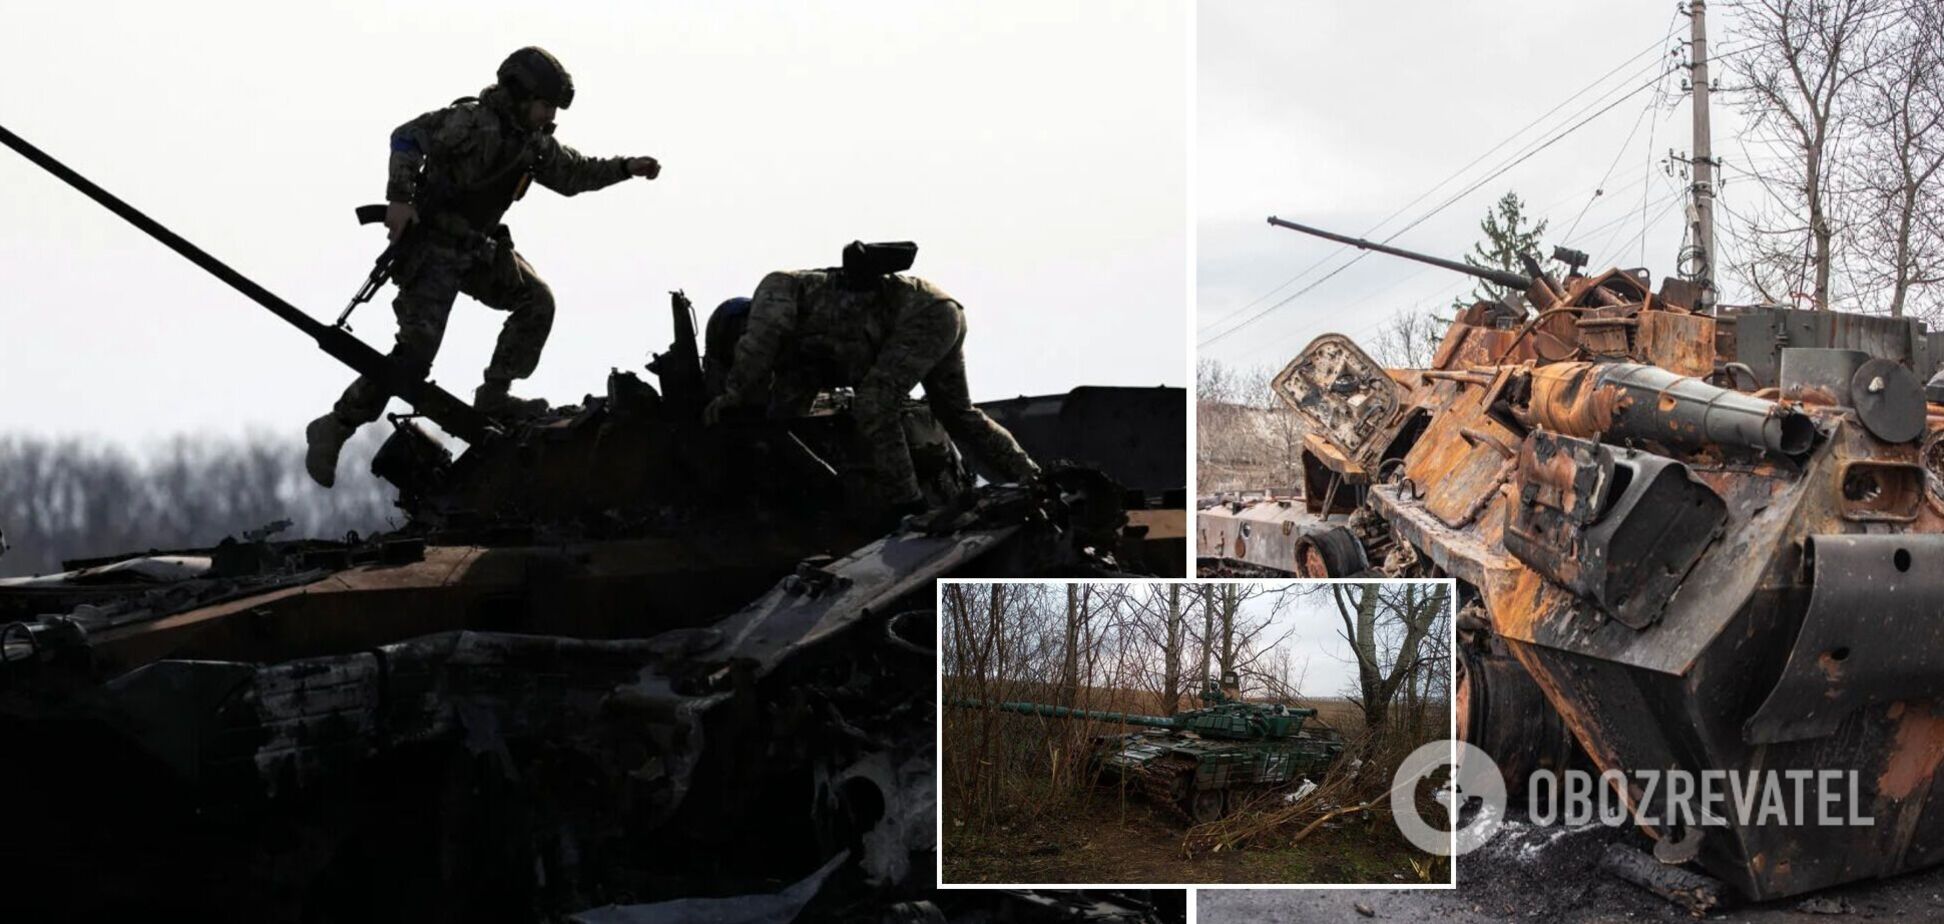 Чернобаевка-19: украинские защитники уничтожили вражескую технику и склад боеприпасов